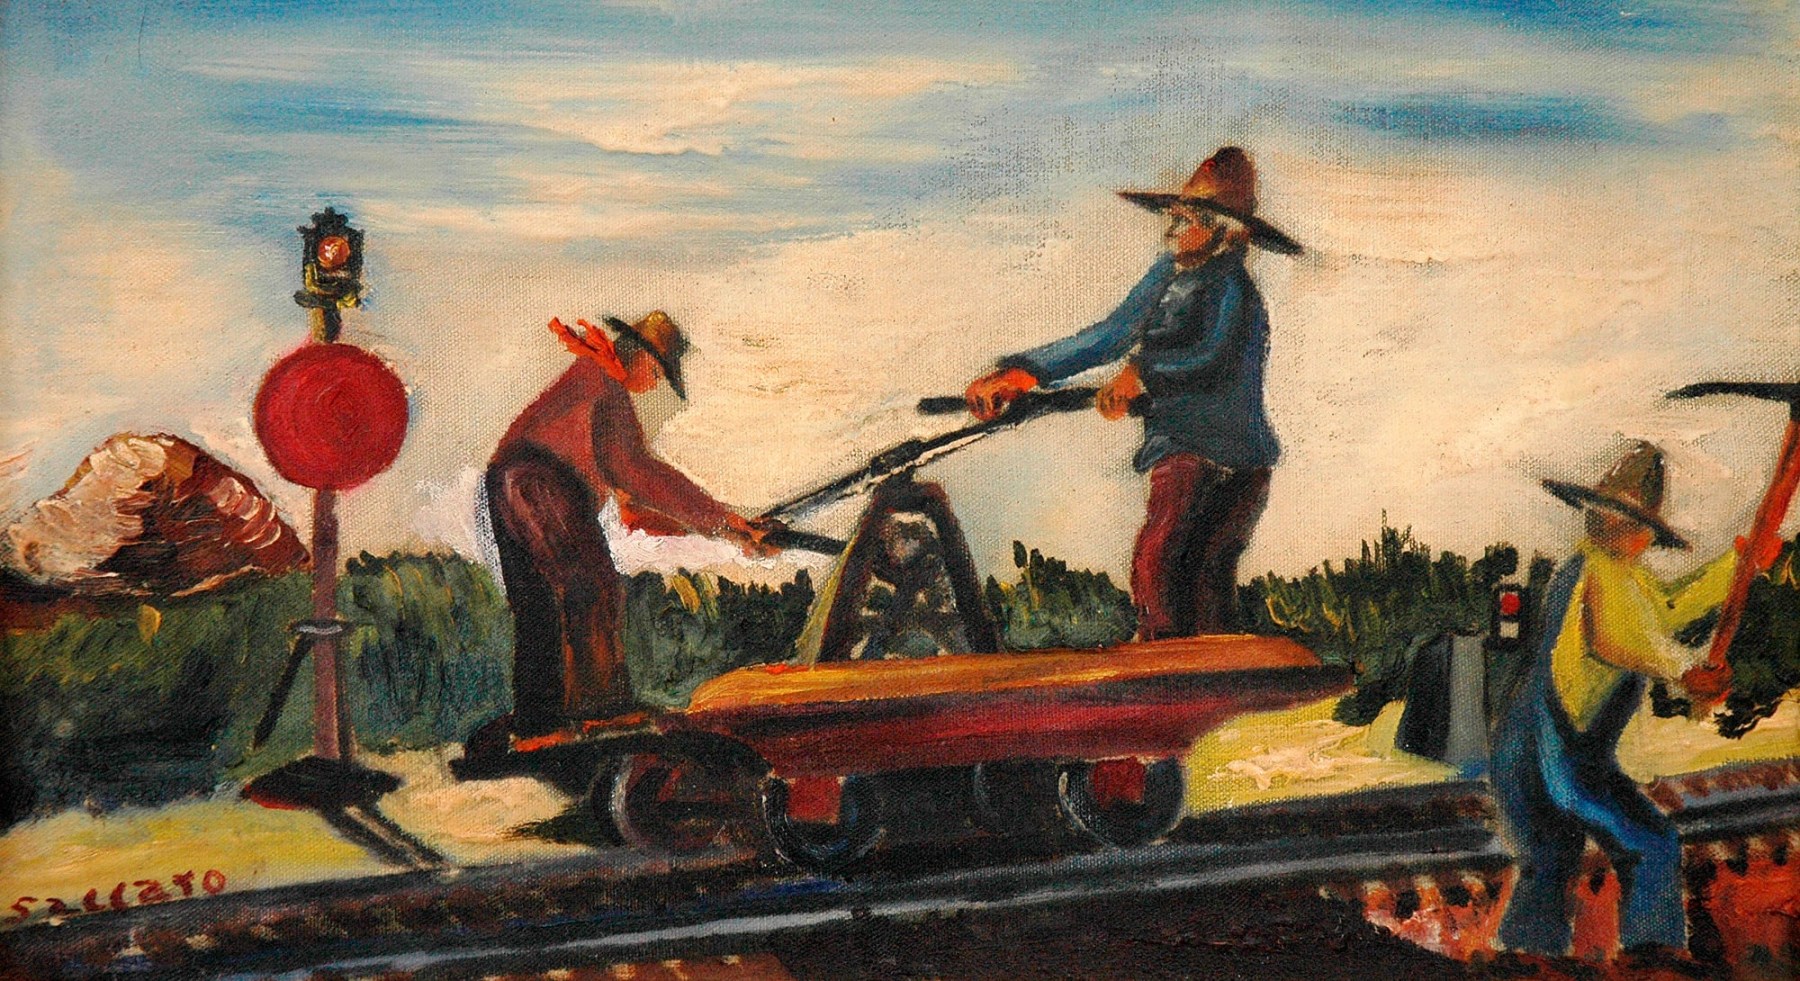 JOHN SACCARO (1913-1981), Railroad Repair, c. 1939